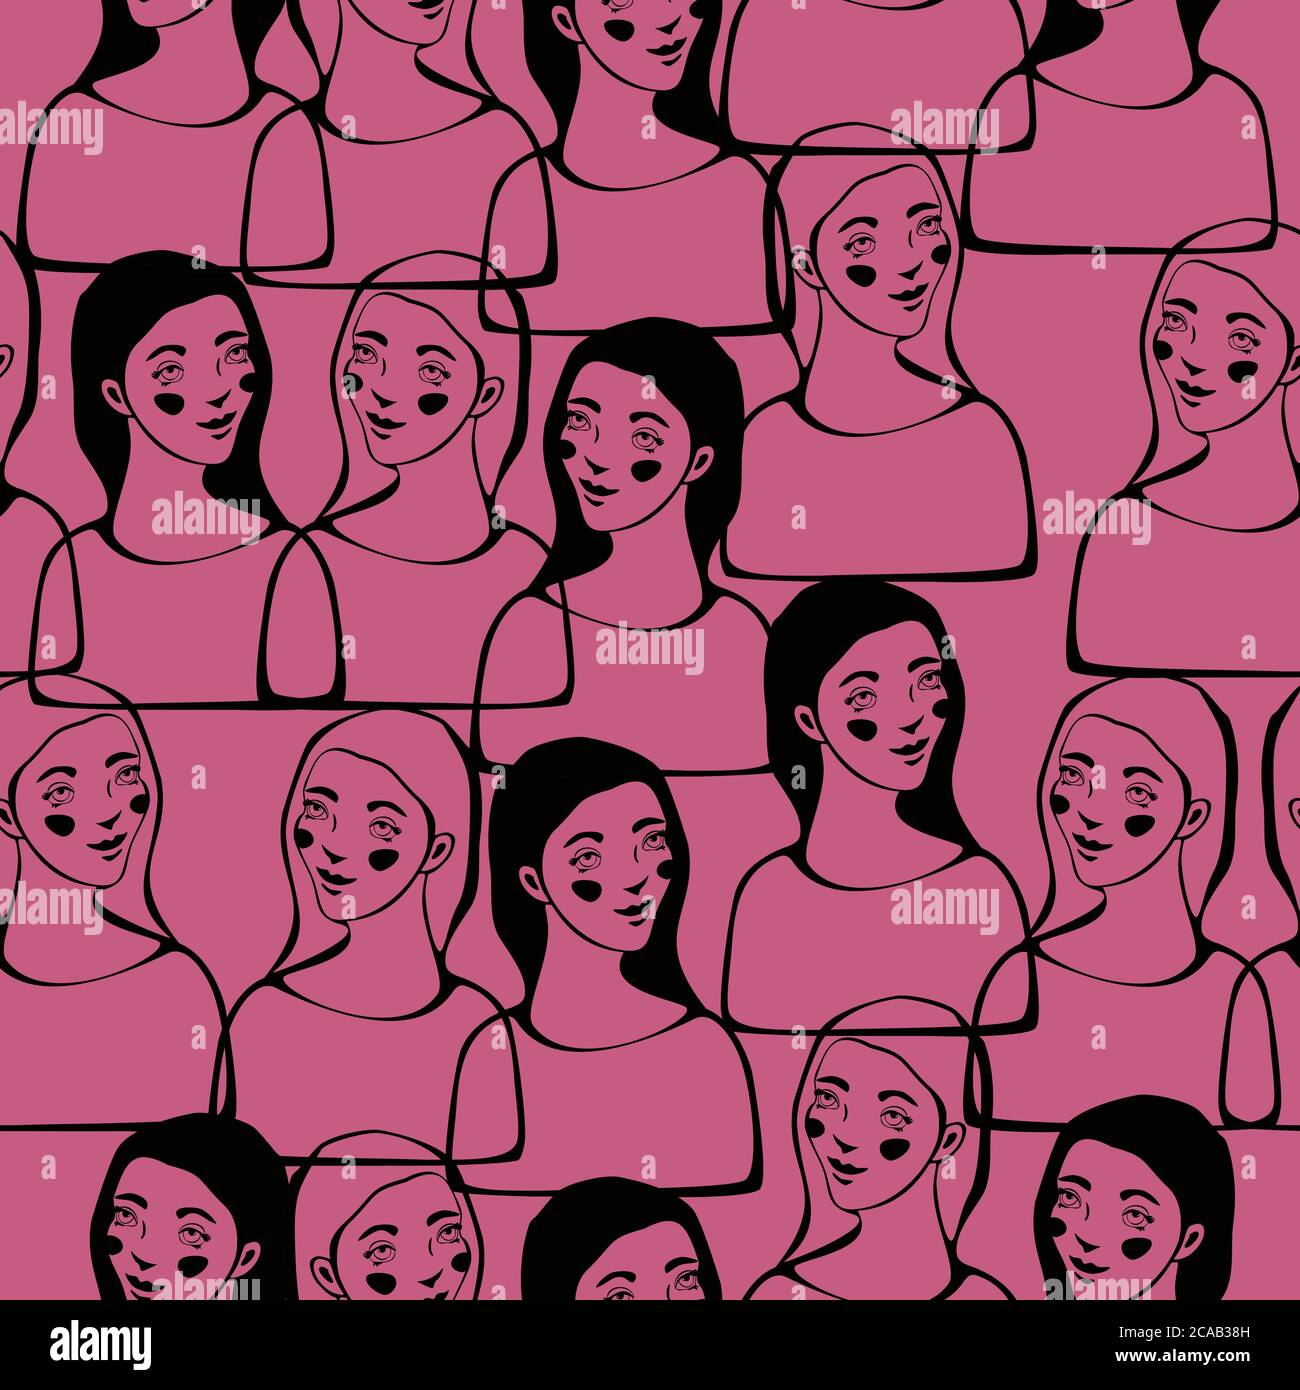 Vektor nahtlose Muster mit Frauen Gesichter. Konzept für den Internationalen Frauentag. Stock Vektor